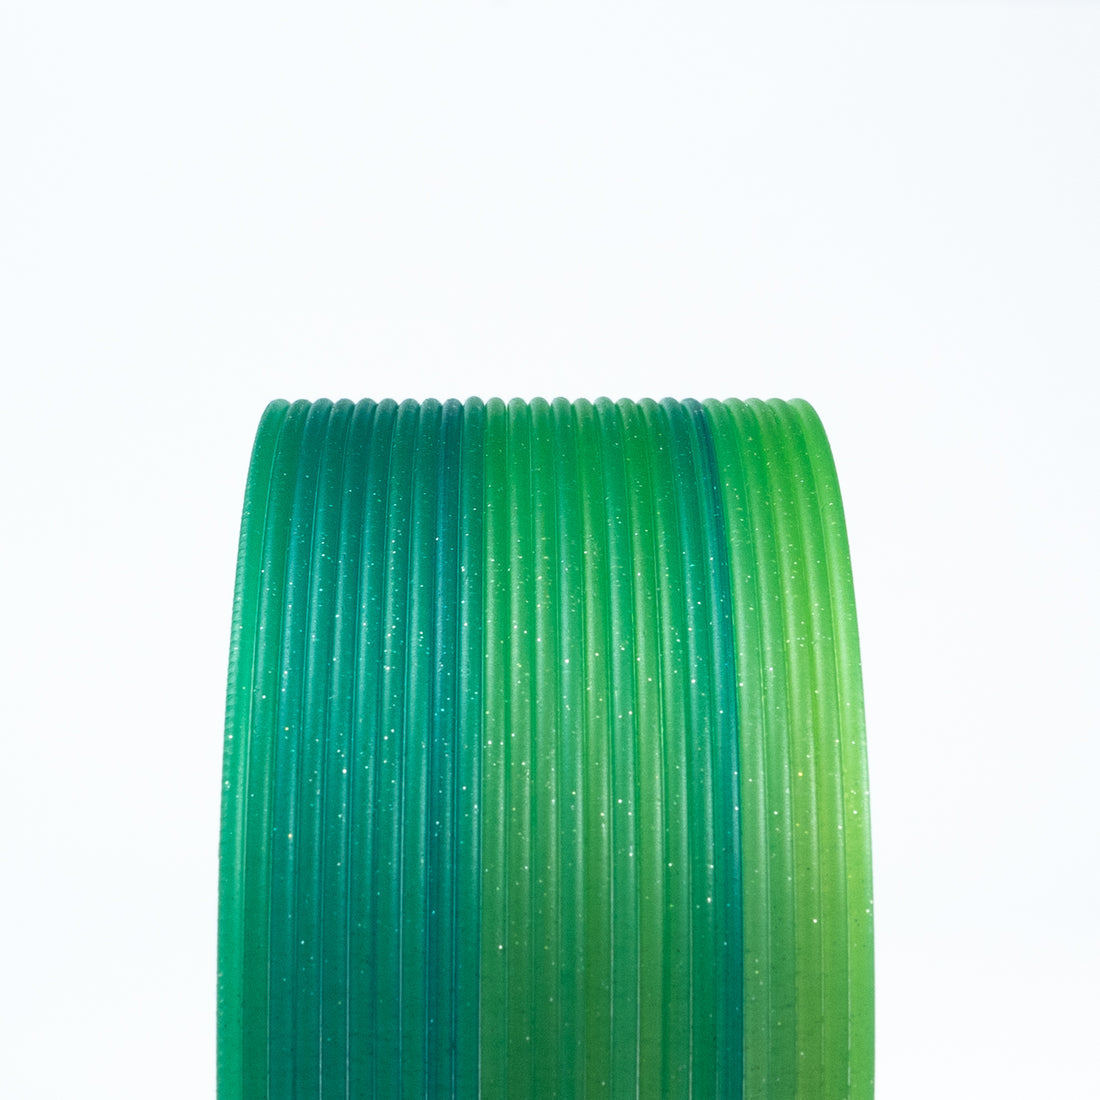 Protopasta HTPLA - 1.75mm (500g) - Forest Fantasy Green Multicolor